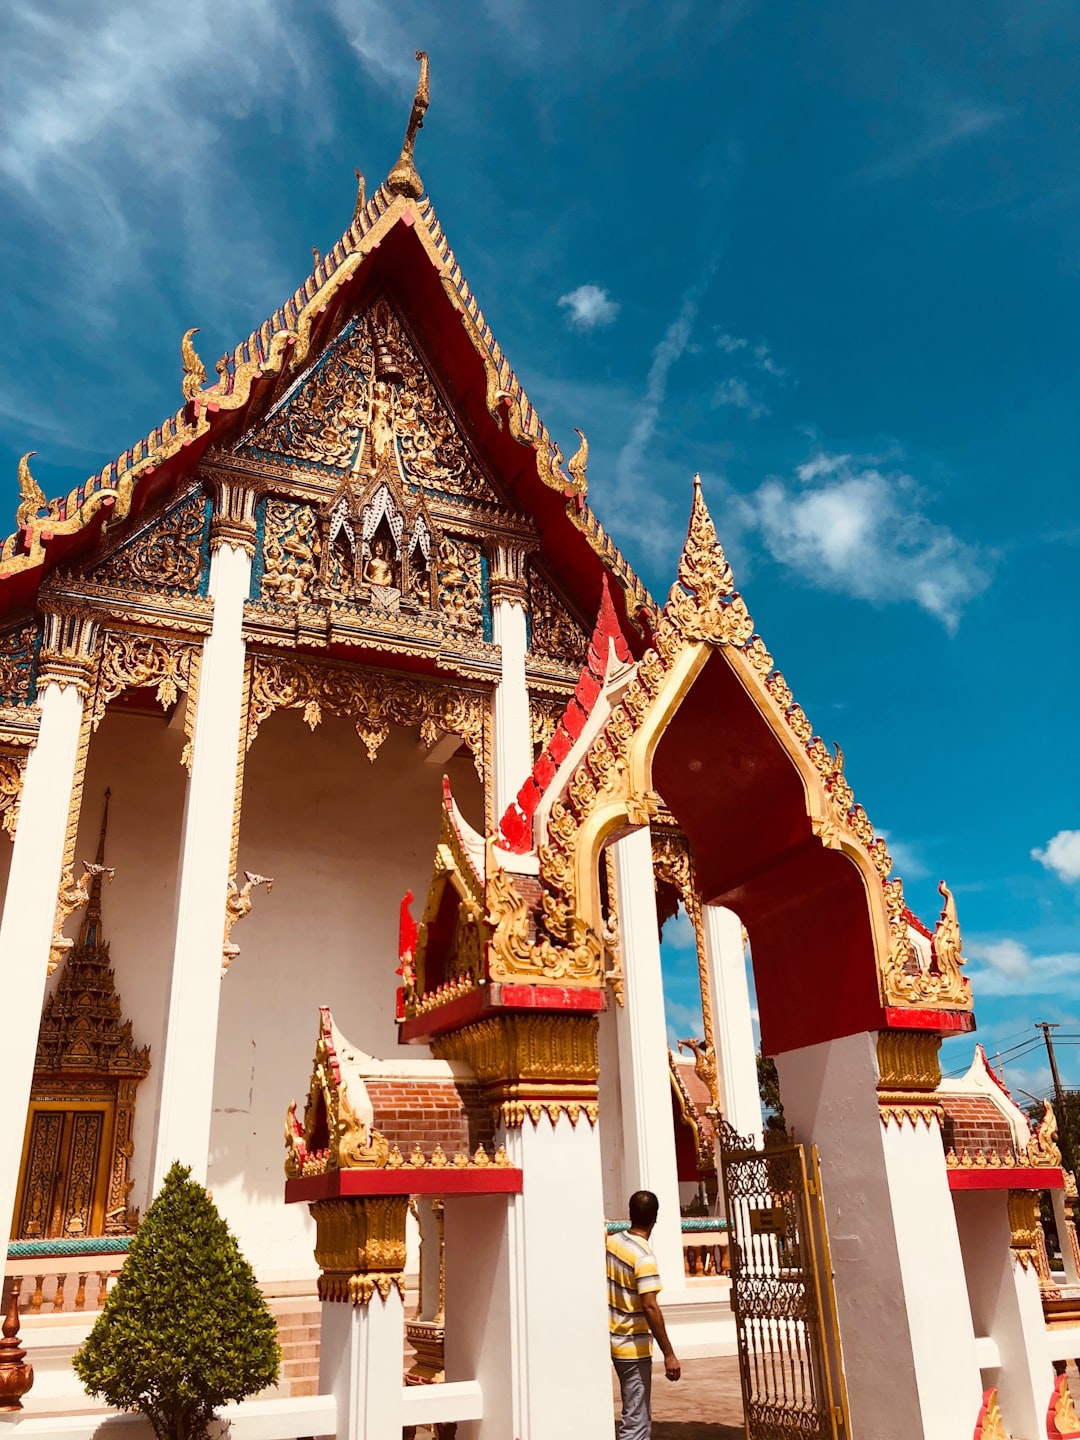 Temple photo spot Phuket Krabi